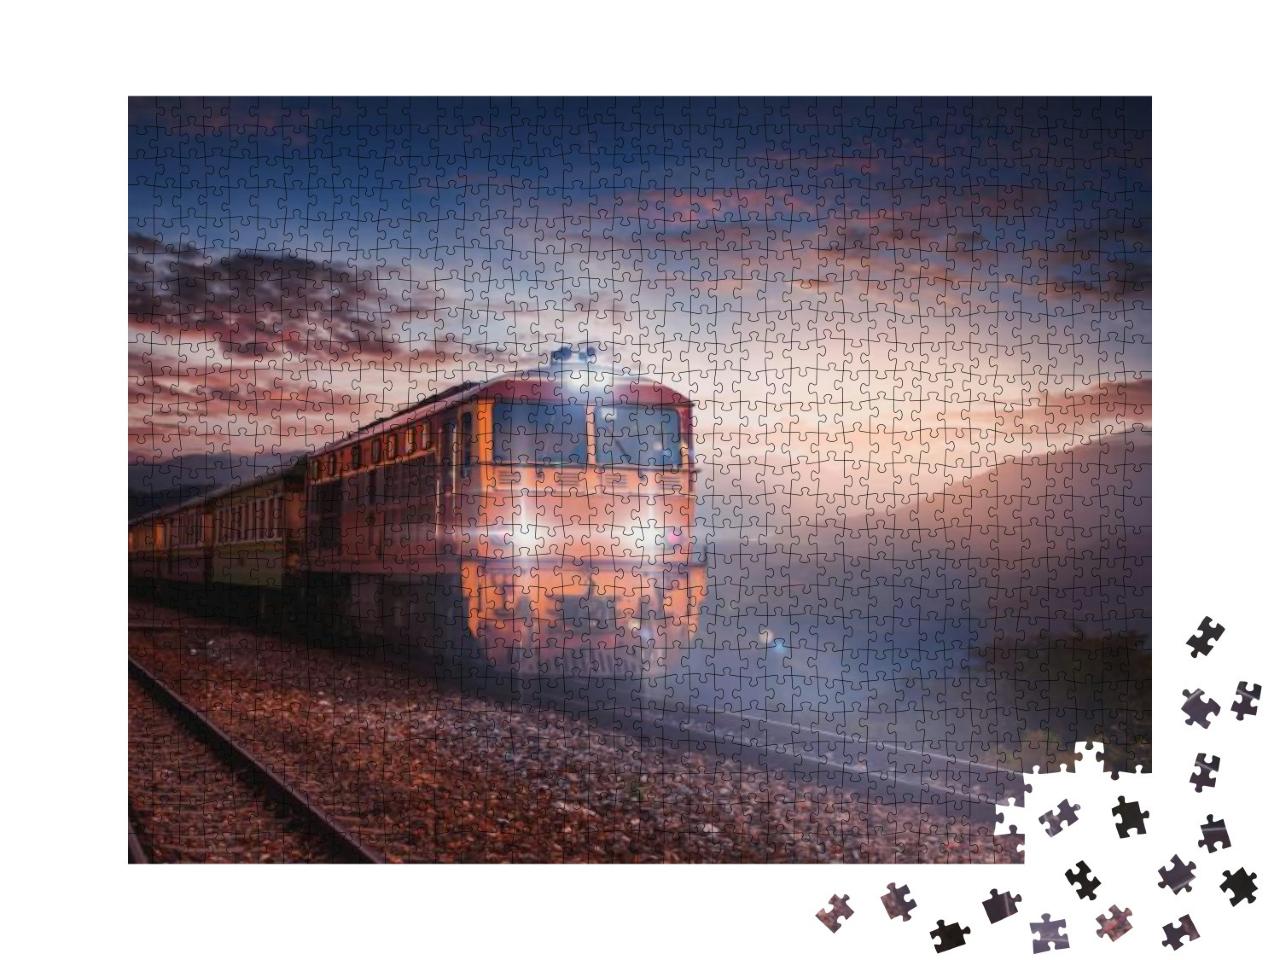 Puzzle 1000 Teile „Zugfahrt in der Abenddämmerung“